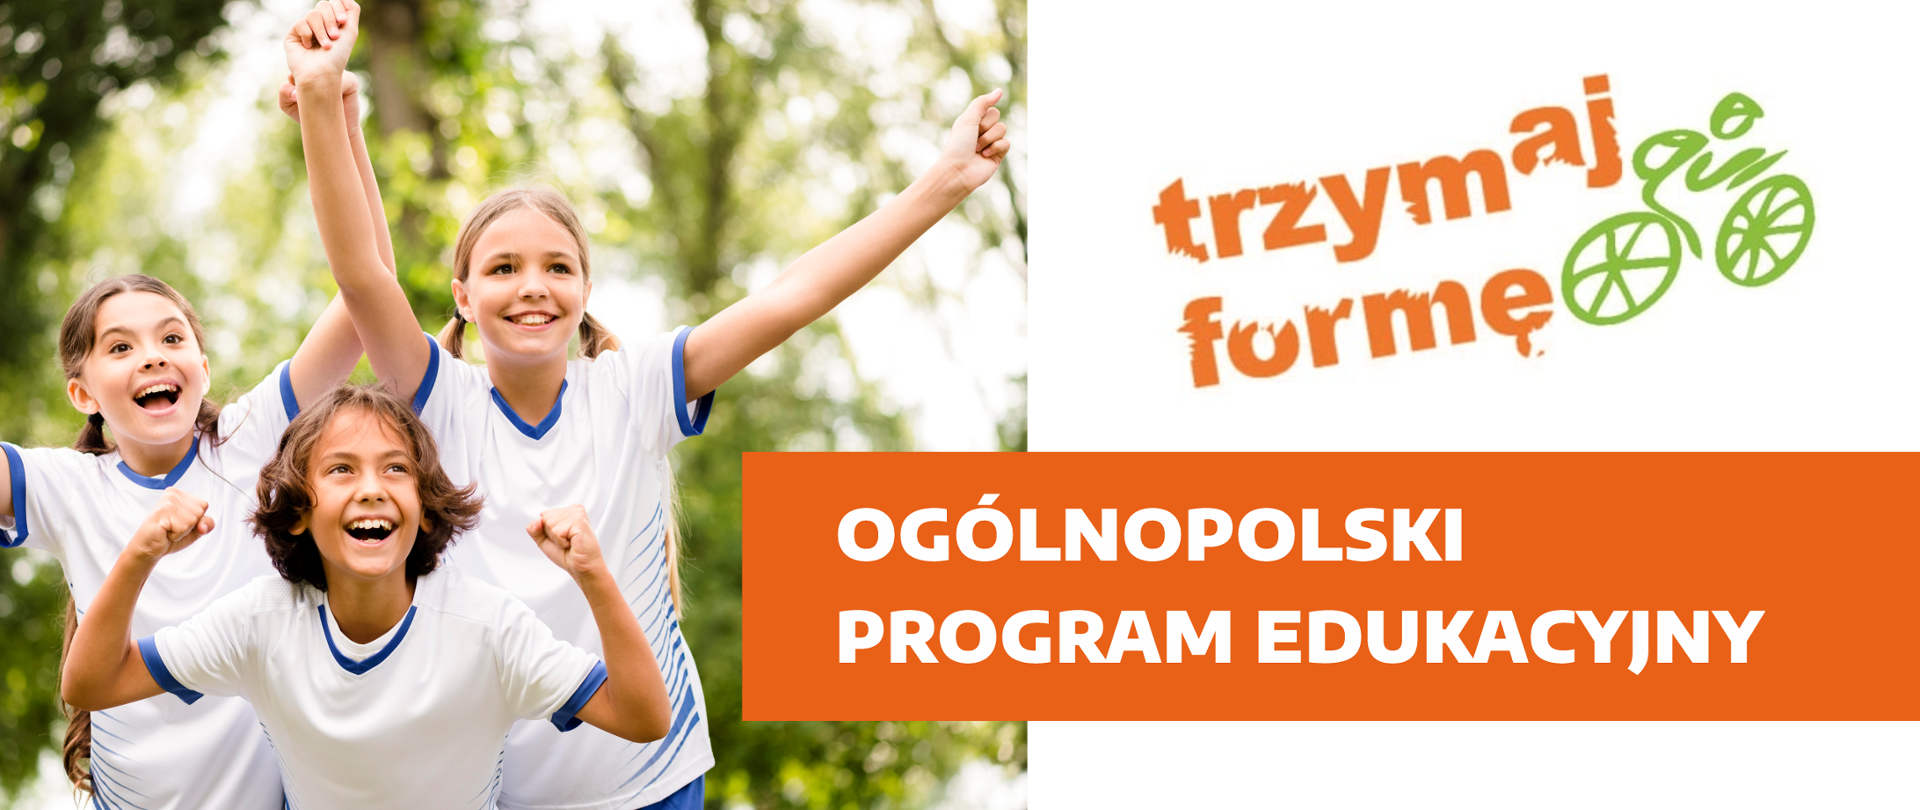 baner z napisem Ogólnopolski program edukacyjny Trzymaj formę, z lewej strony trójka uśmiechniętych dzieci